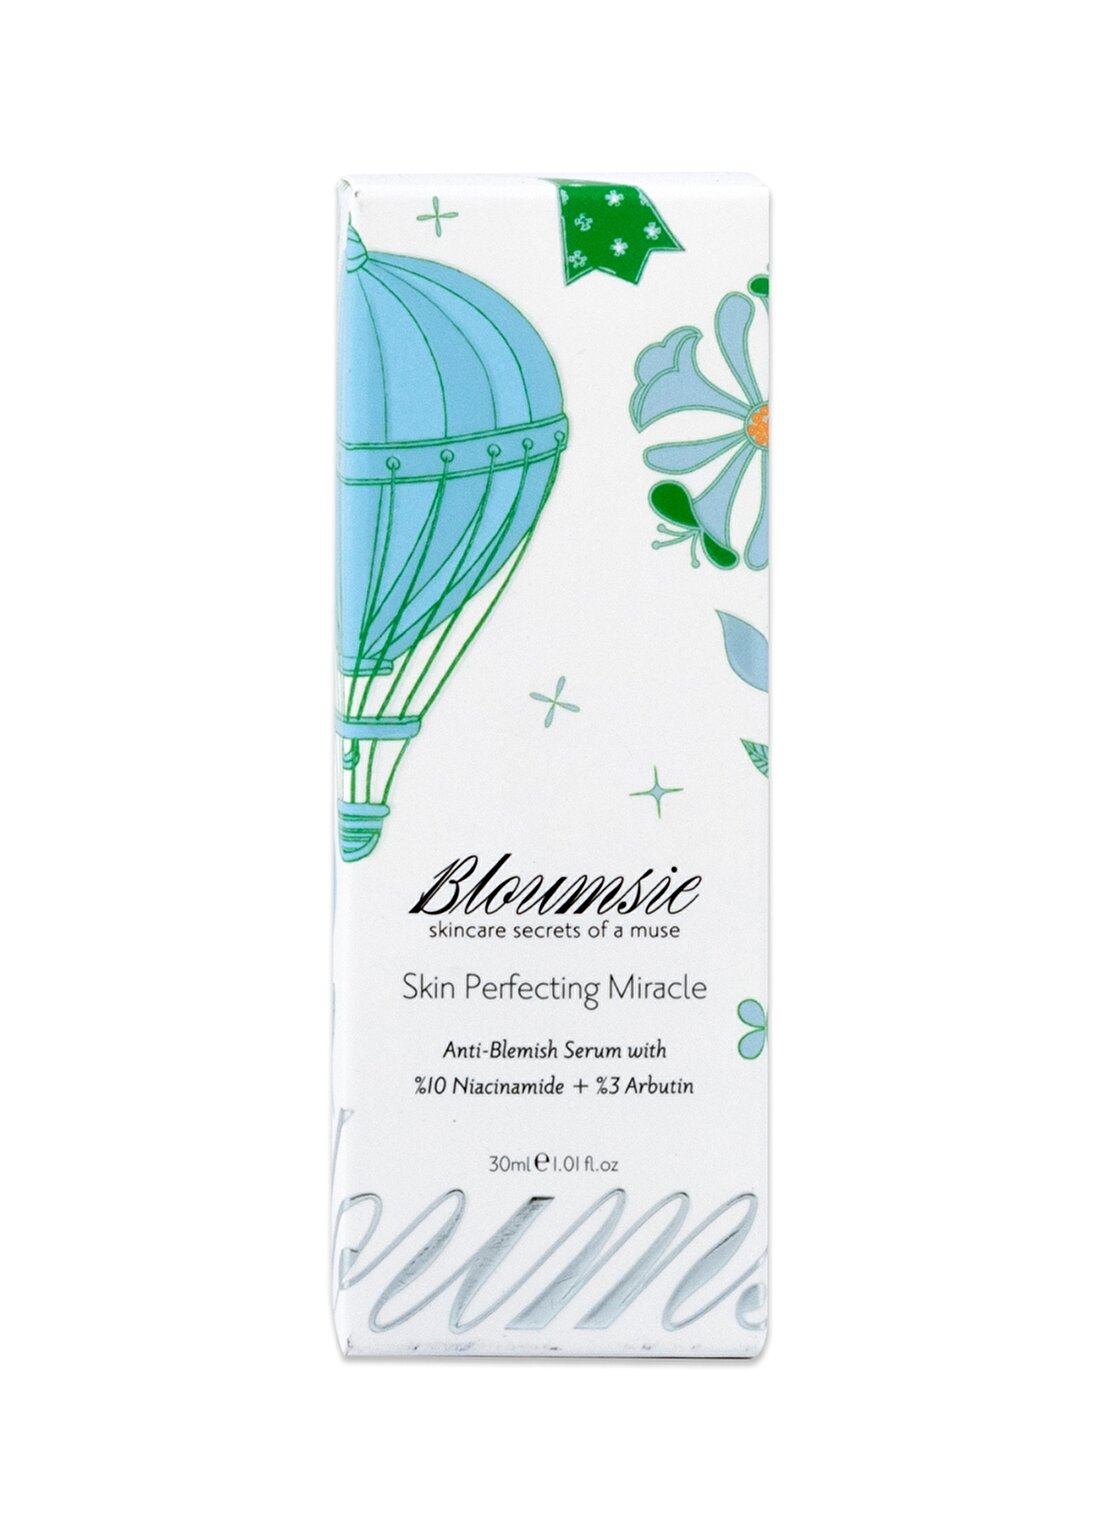 Bloumsie Skin Perfecting Miracle Gözenek Sıkılaştırıcı Bakım Serumu %10 Niacinamide + %3 Arbutin + Hyaluronicacid